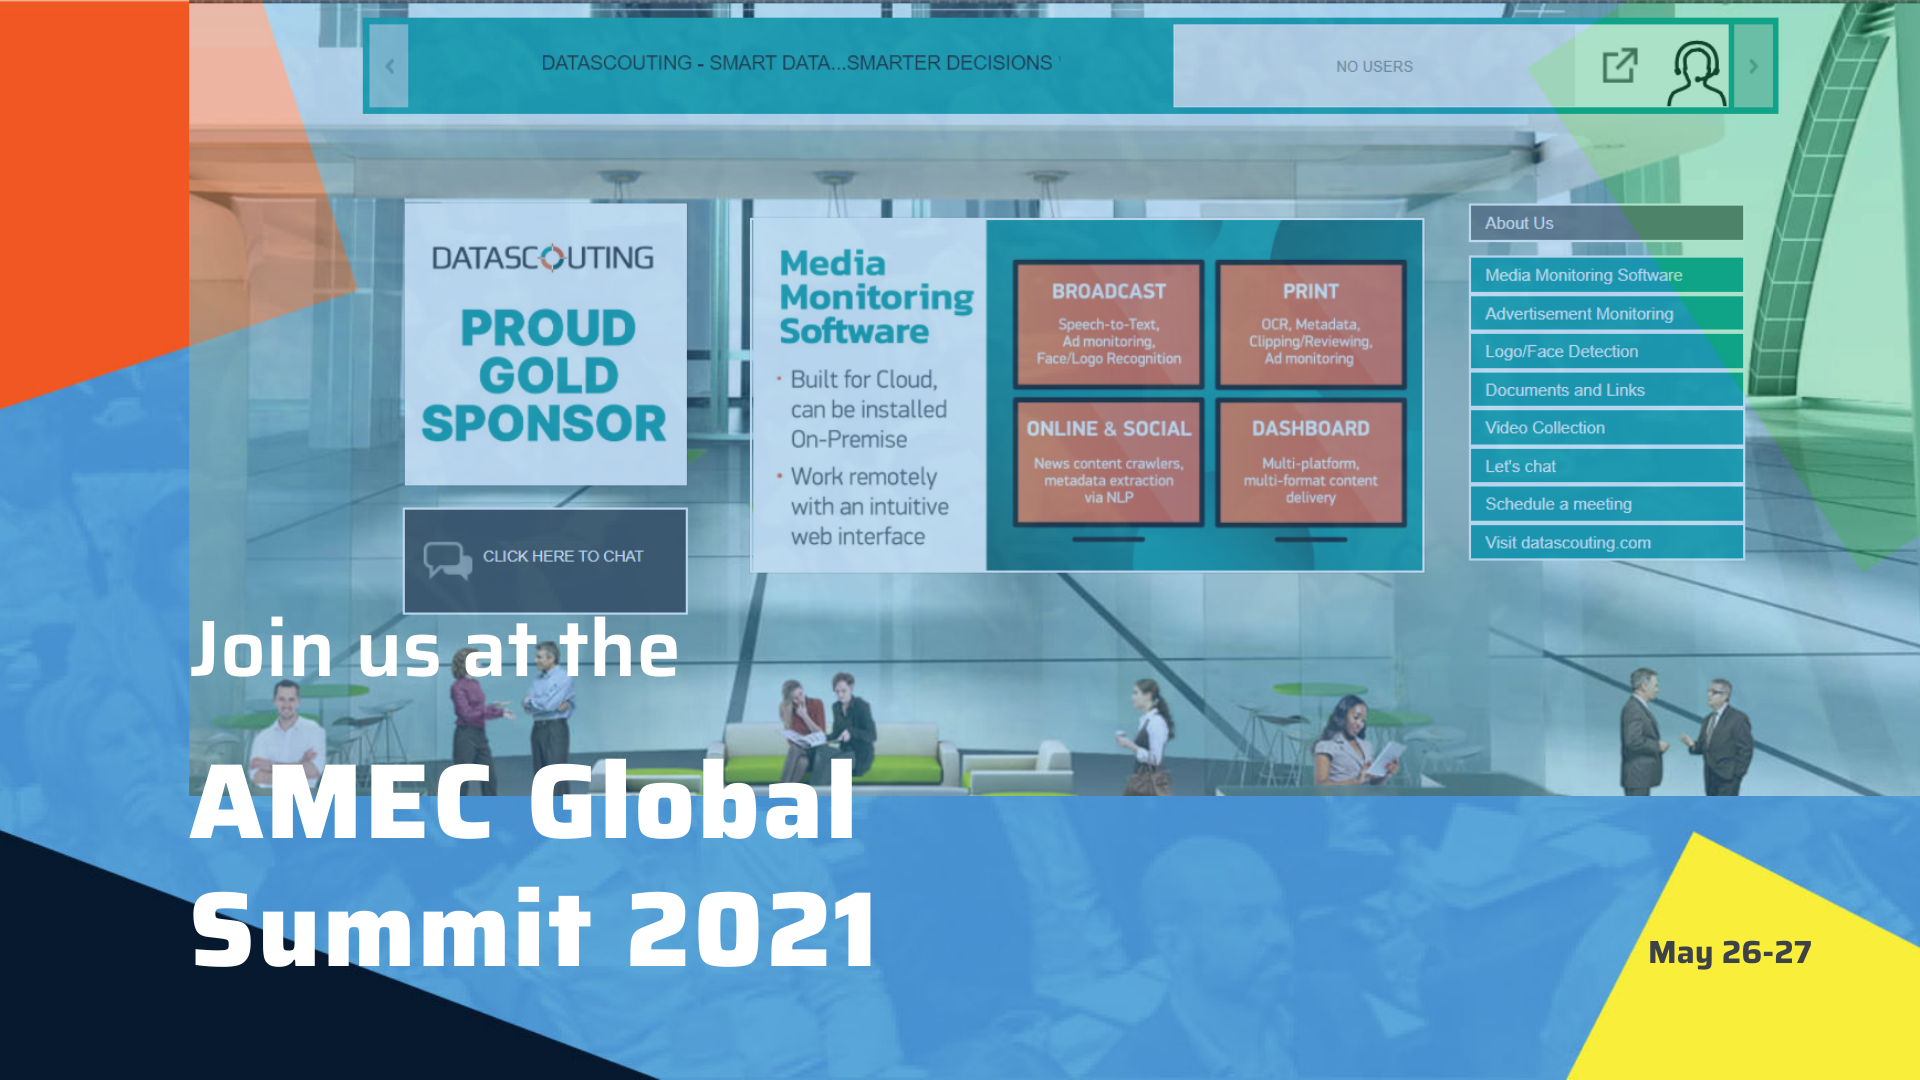 AMEC Global Summit 2021 Proud Gold Sponsor DataScoutingDataScouting